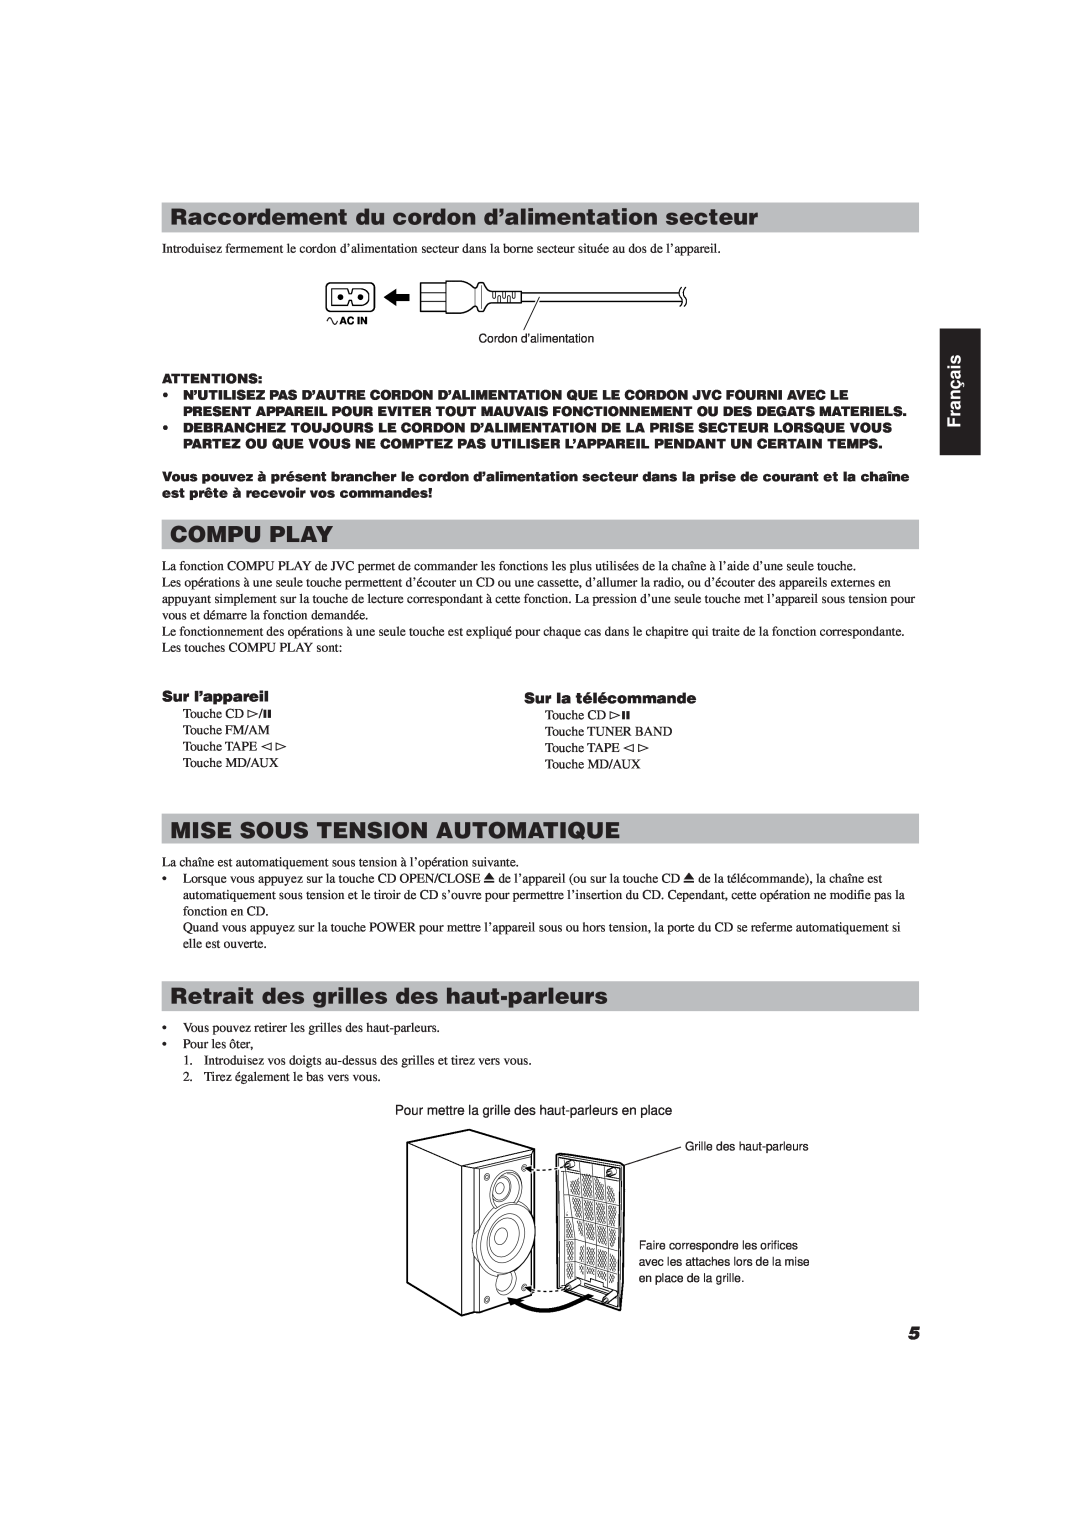 JVC FS-V30 manual Raccordement du cordon d’alimentation secteur, Mise Sous Tension Automatique, Compu Play, Français 